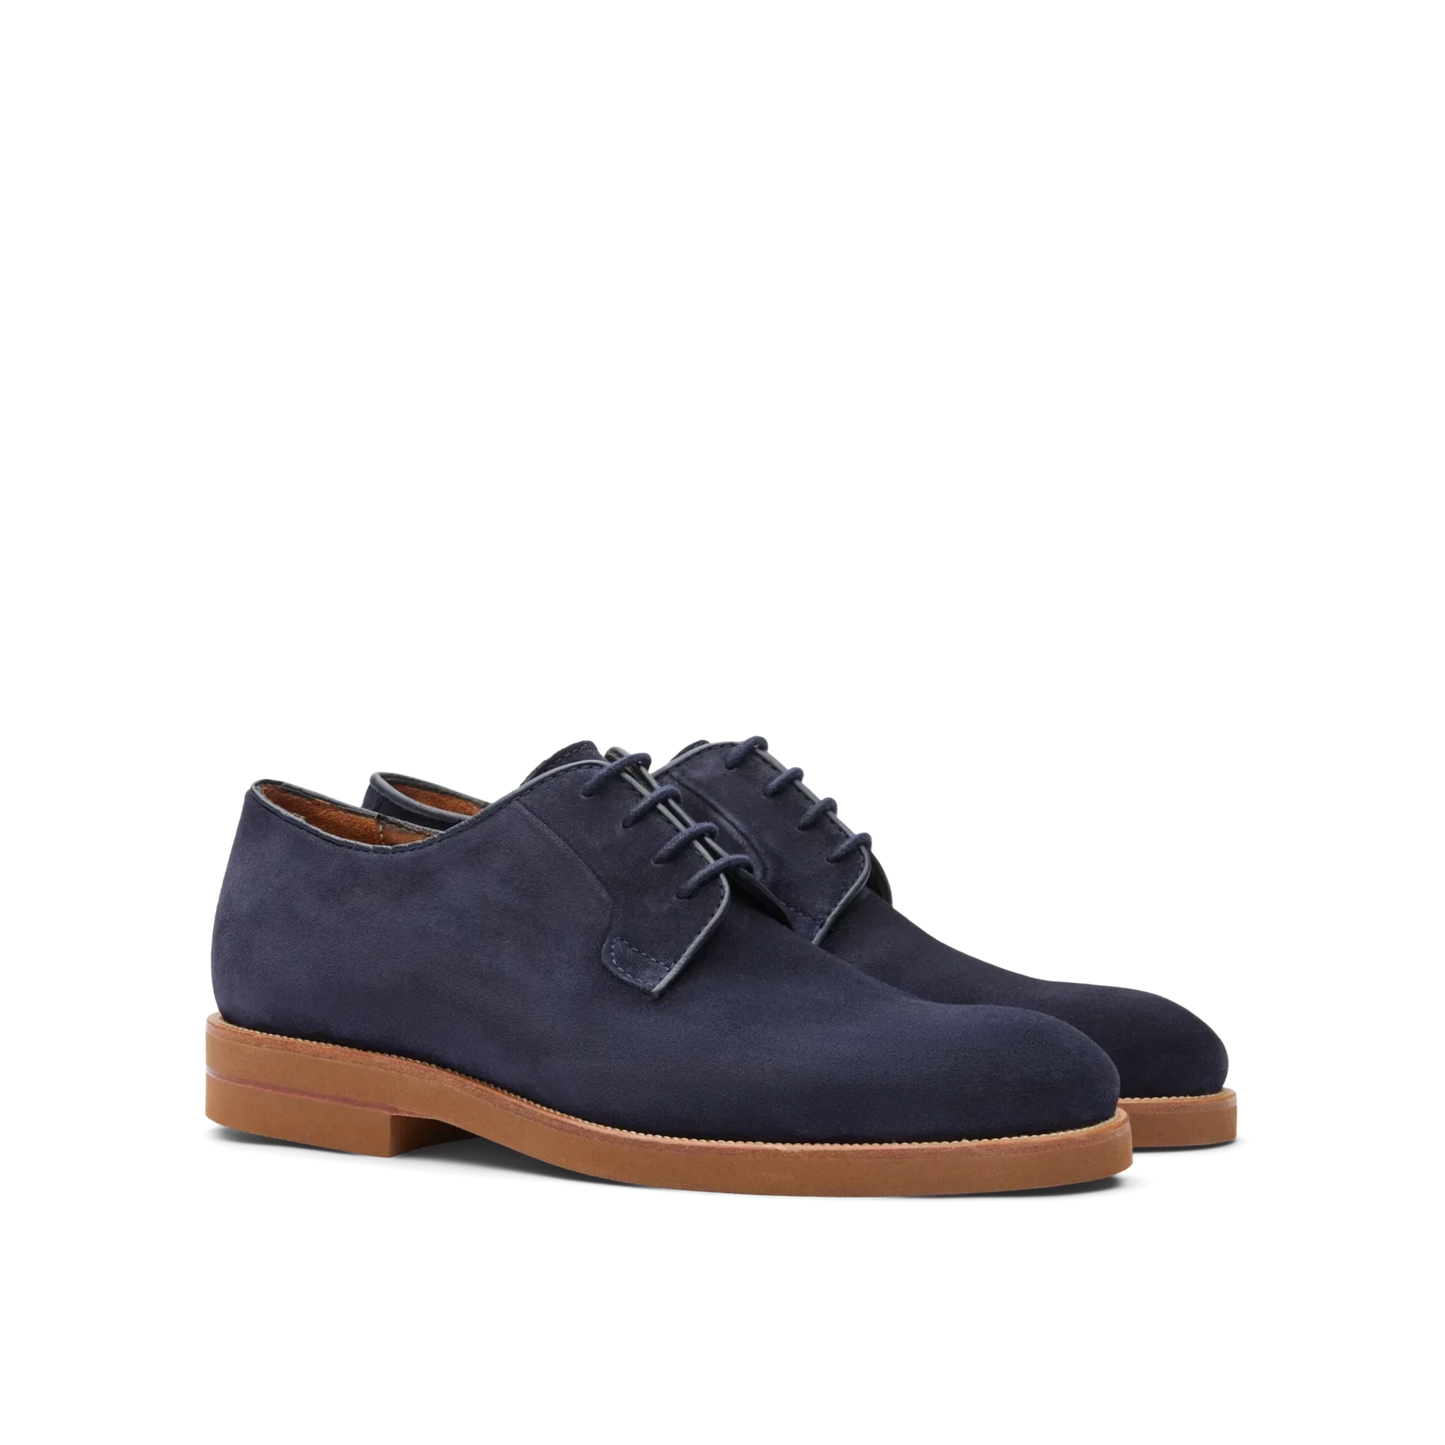 Zapatos Oxford De La Marca Lottusse Para Hombre Modelo Camoscio Marino En Color Azul